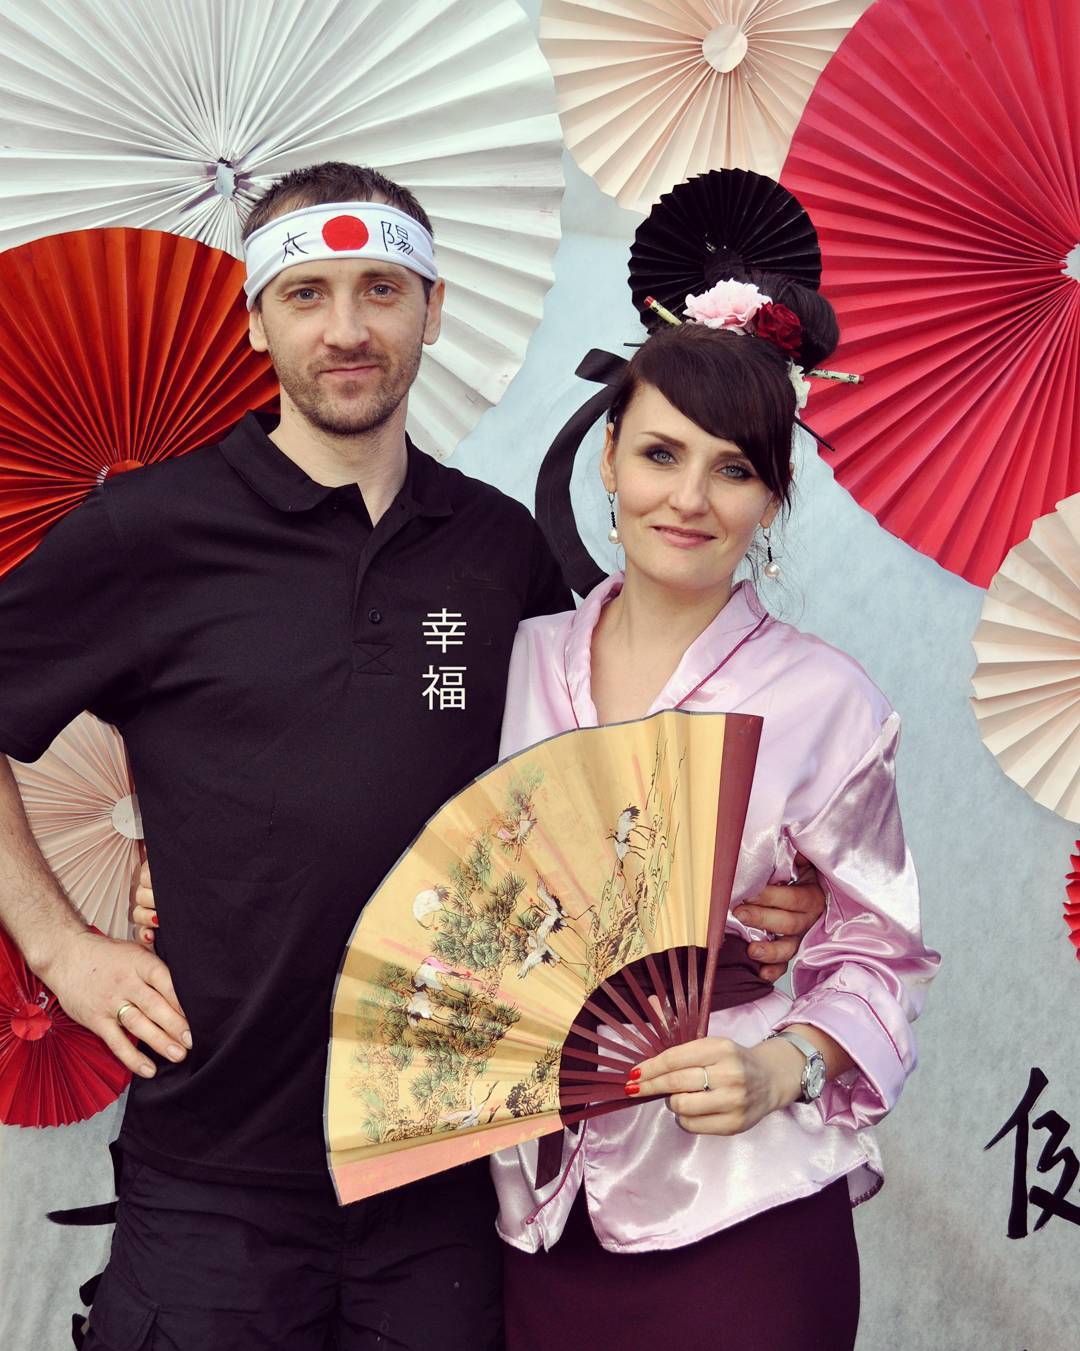 Серпантин идей - костюмированное новогоднее поздравление от "японской гейши" // музыкальное и веселое новогоднее поздравление от гостя, переодетого в японский костюм